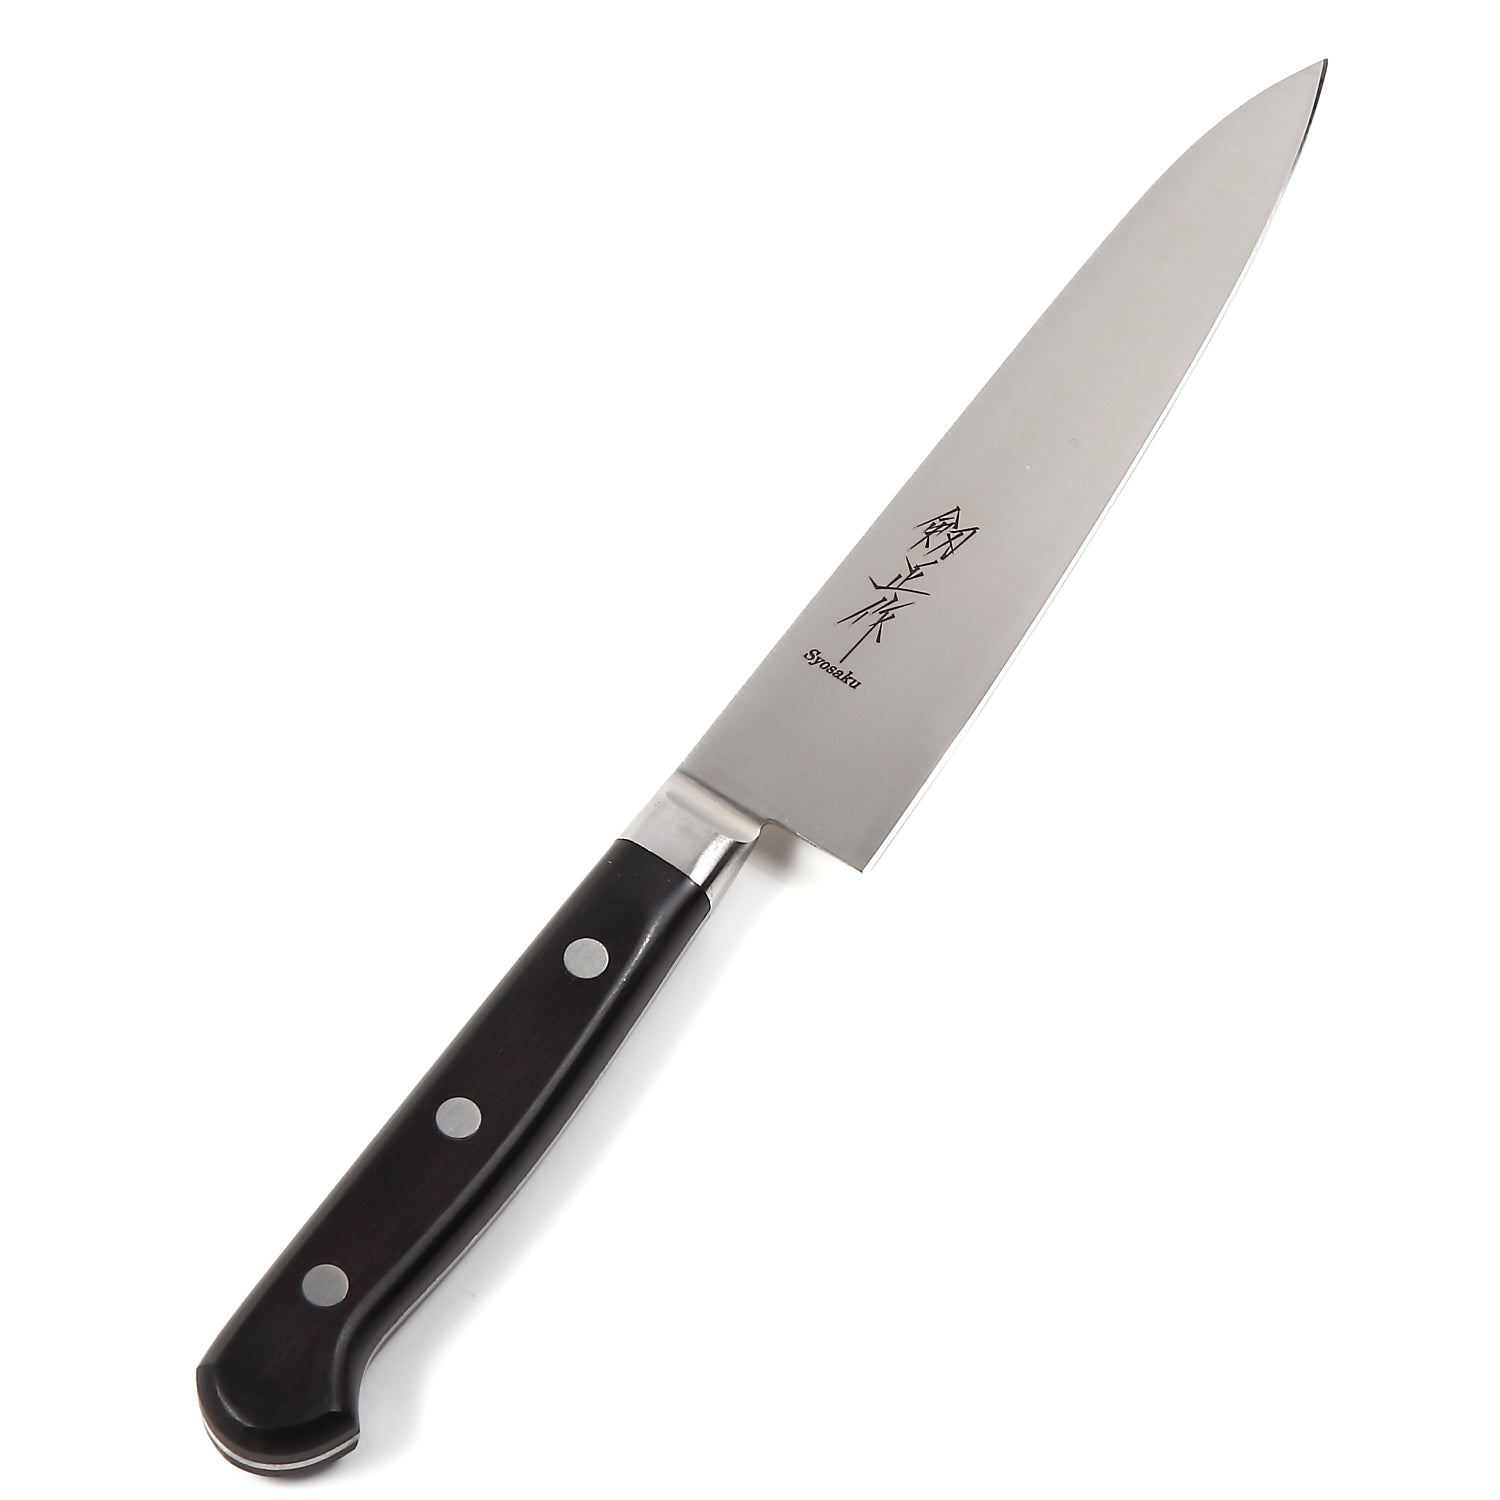 Syosaku Japanese Petty Best Sharp Kitchen Chef Knife INOX AUS-8A Stainless Steel Black Pakkawood Handle, 6-inch (150mm) - Syosaku-Japan